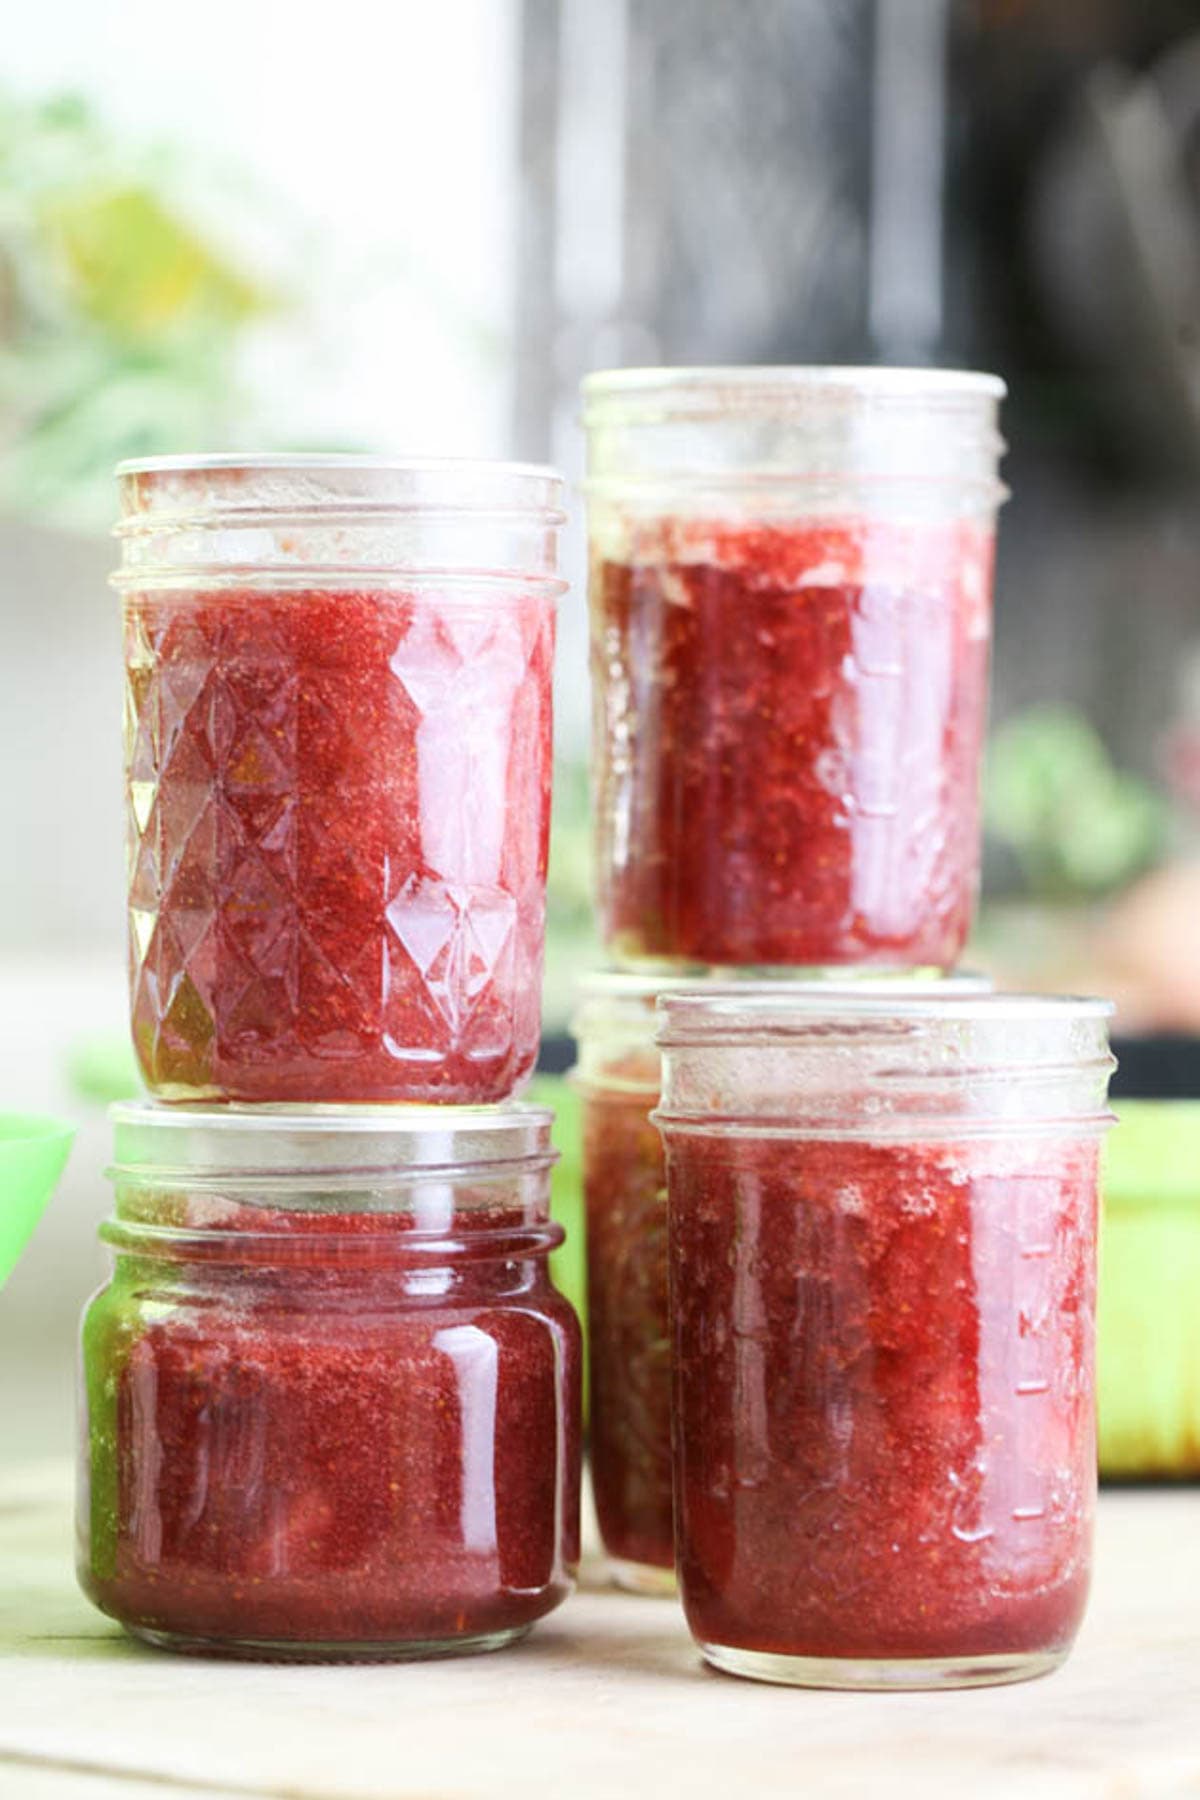 low sugar strawberry jam ready for storage